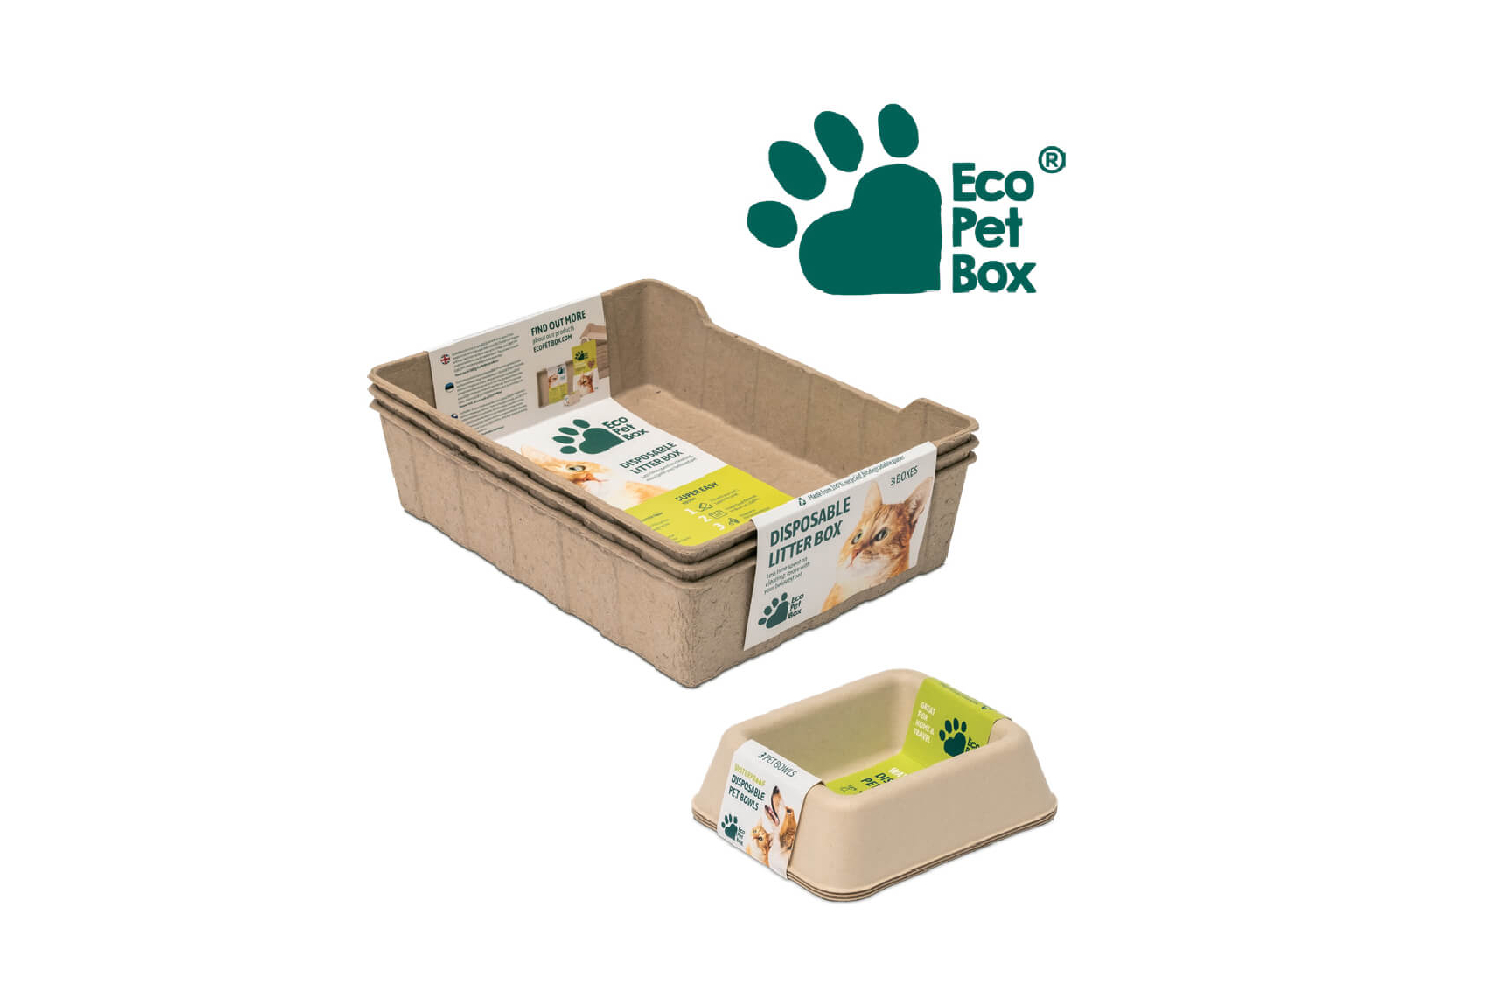 Eco Pet Box